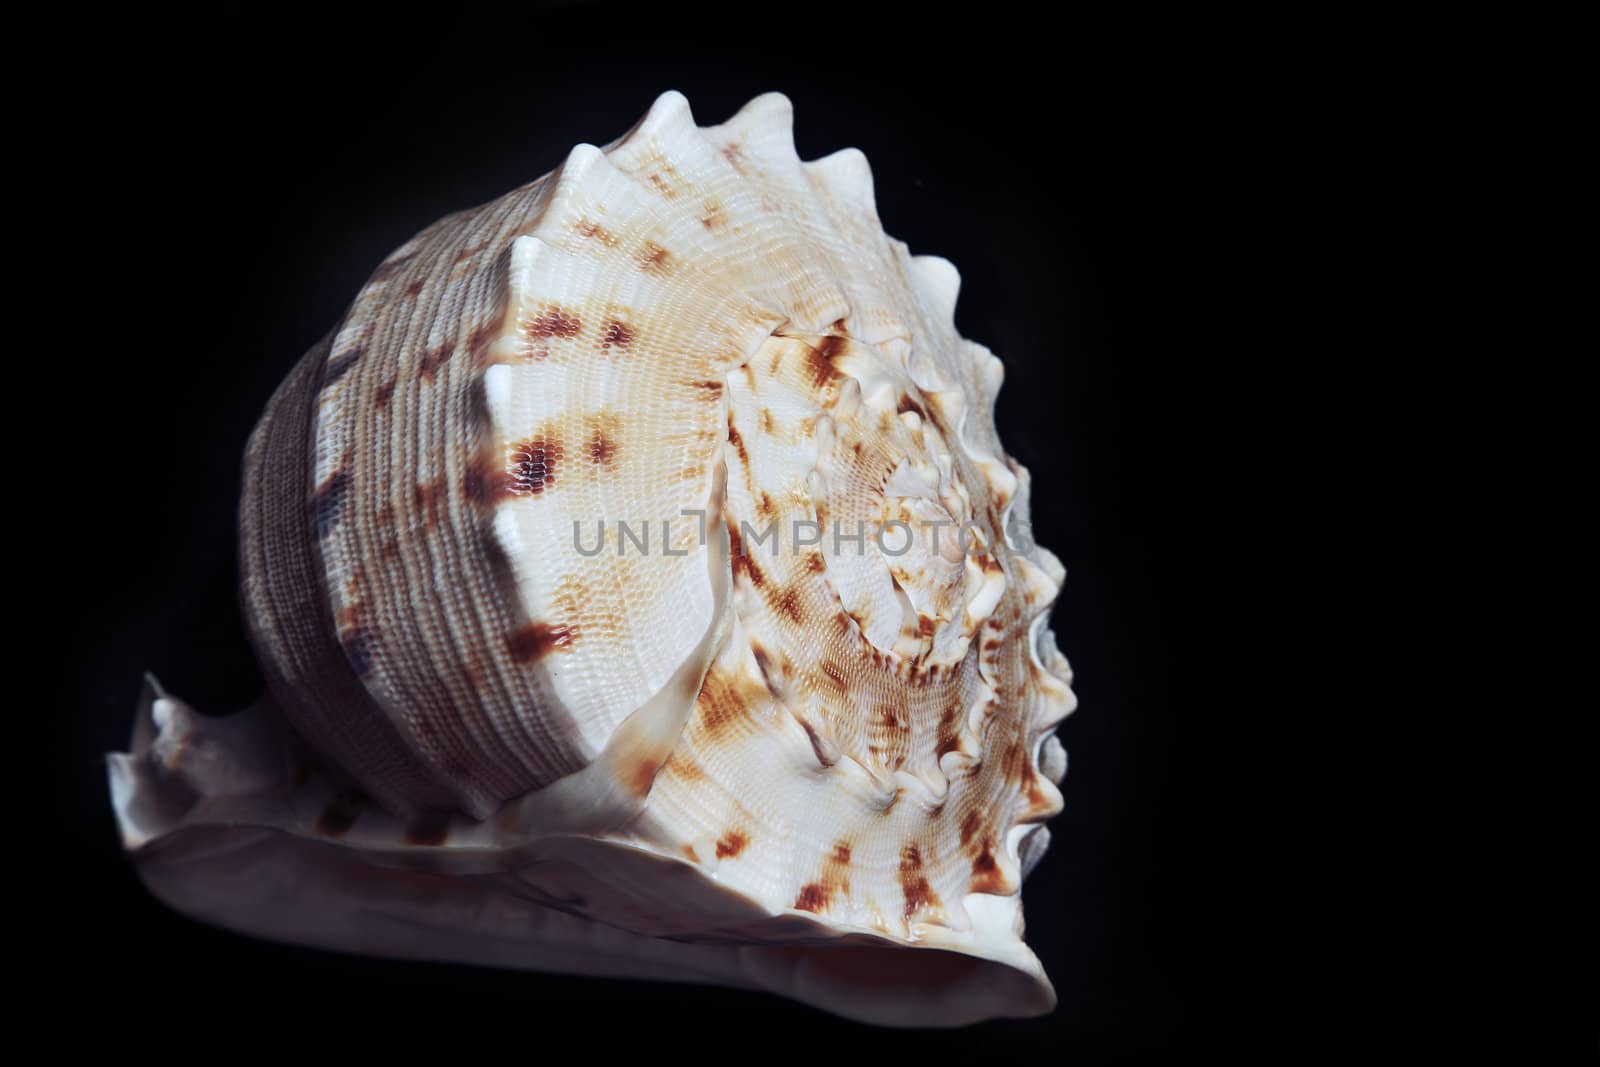 Seashell by Novic